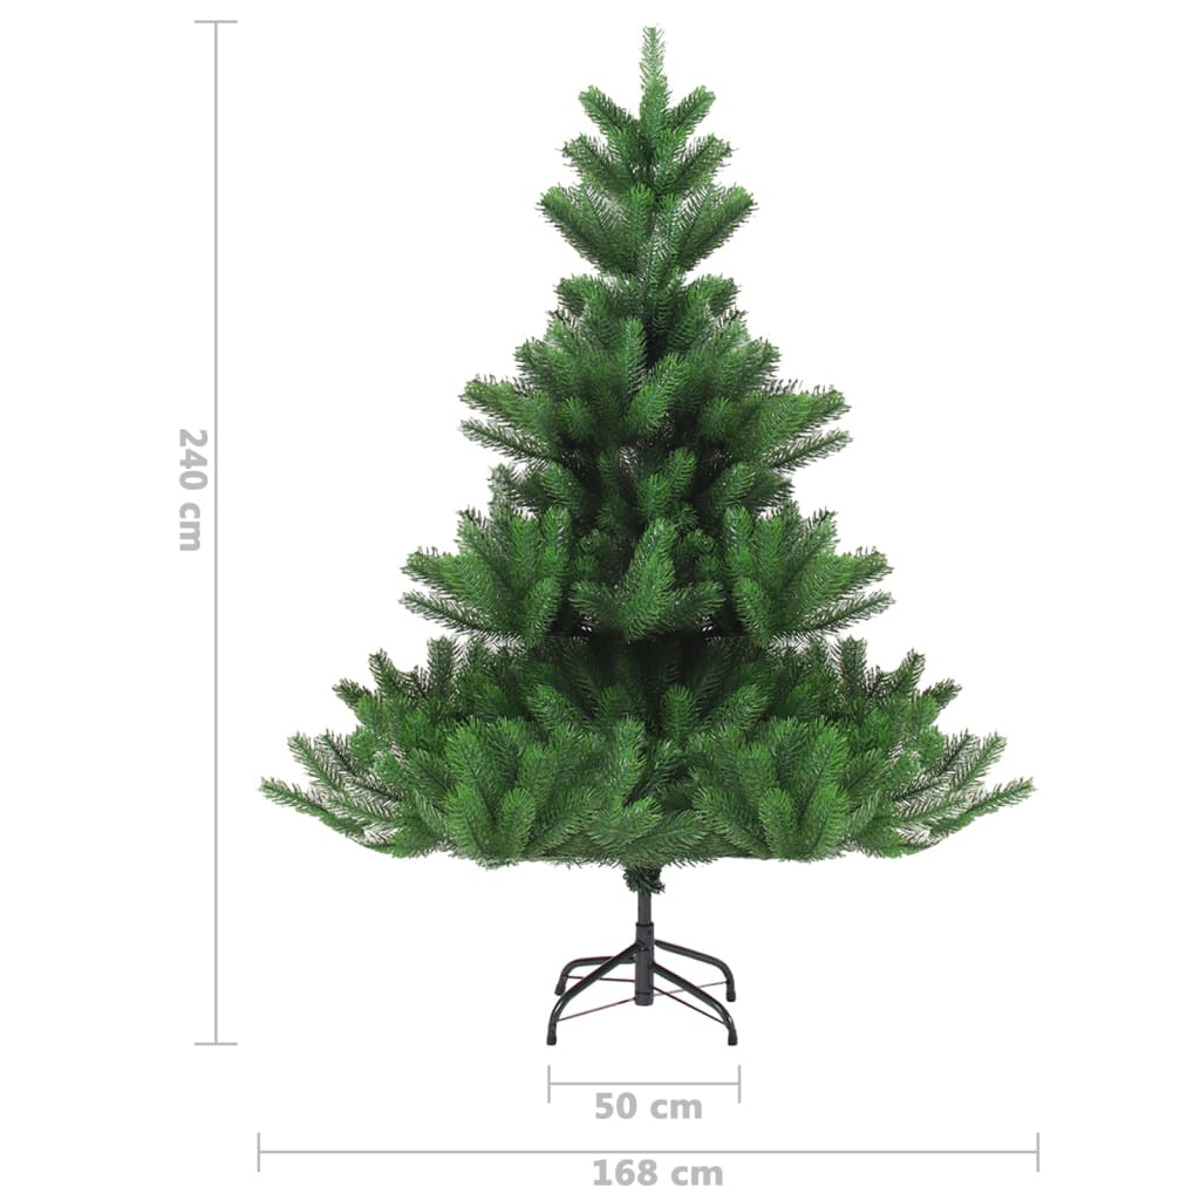 VIDAXL 3077562 Weihnachtsbaum